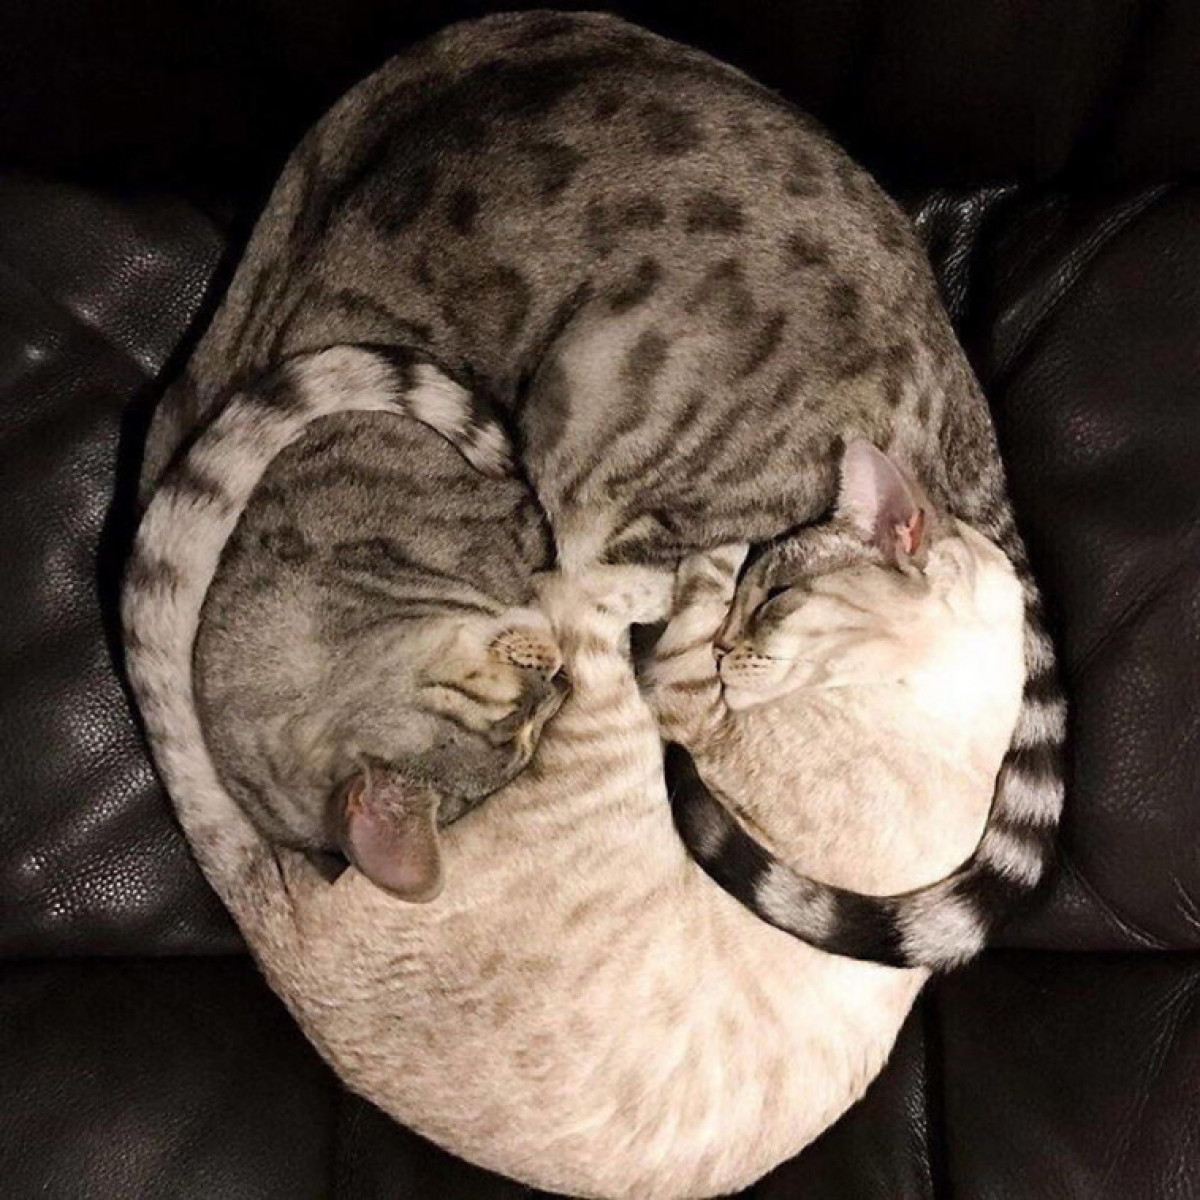 Vòng tròn khớp nhau đến từng milimet khi 2 chú mèo ôm nhau ngủ ngon lành.